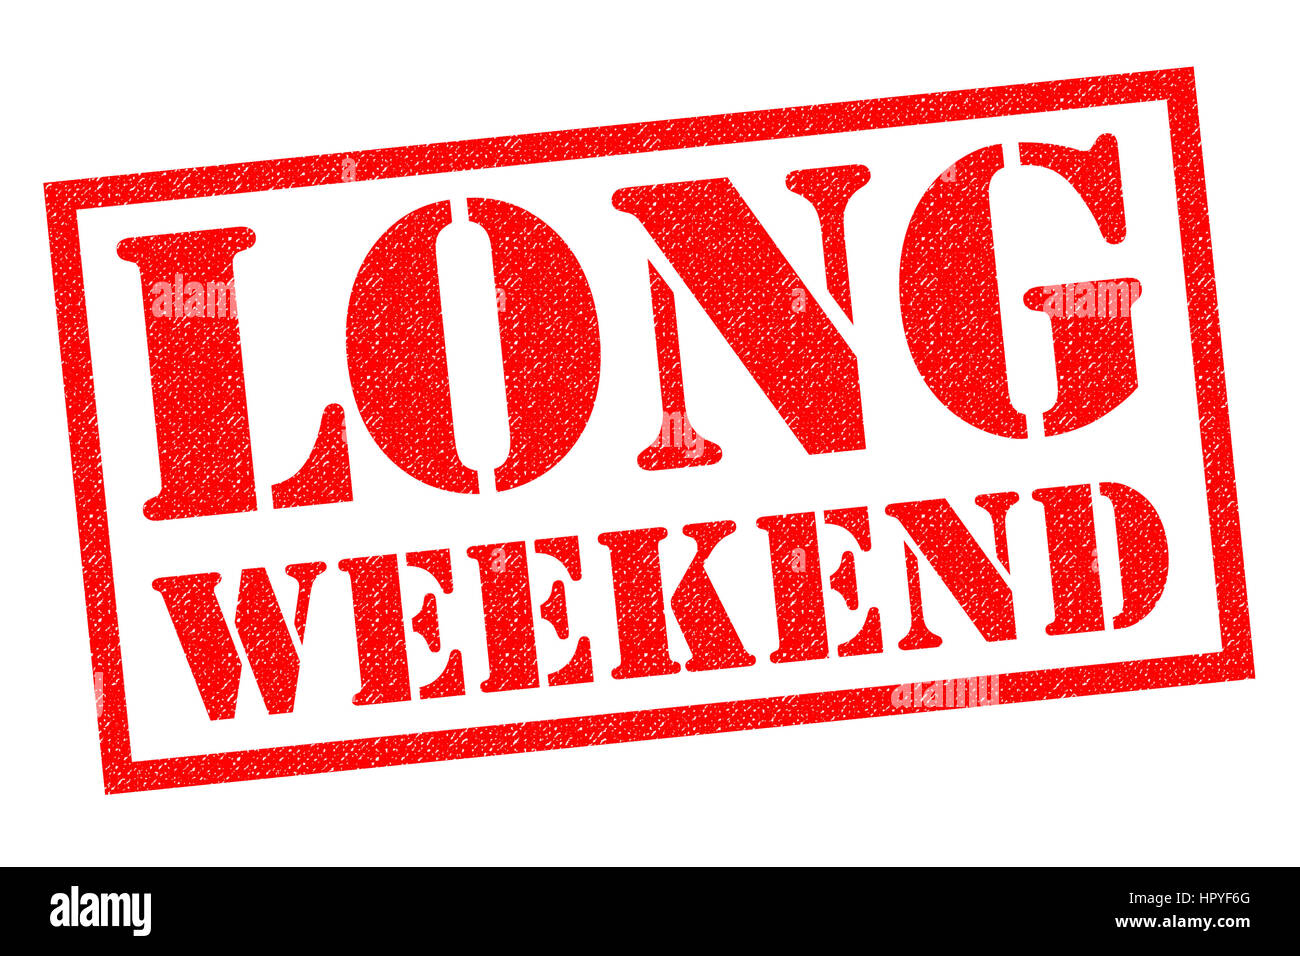 LONG WEEK-END de tampon en caoutchouc rouge sur un fond blanc. Banque D'Images